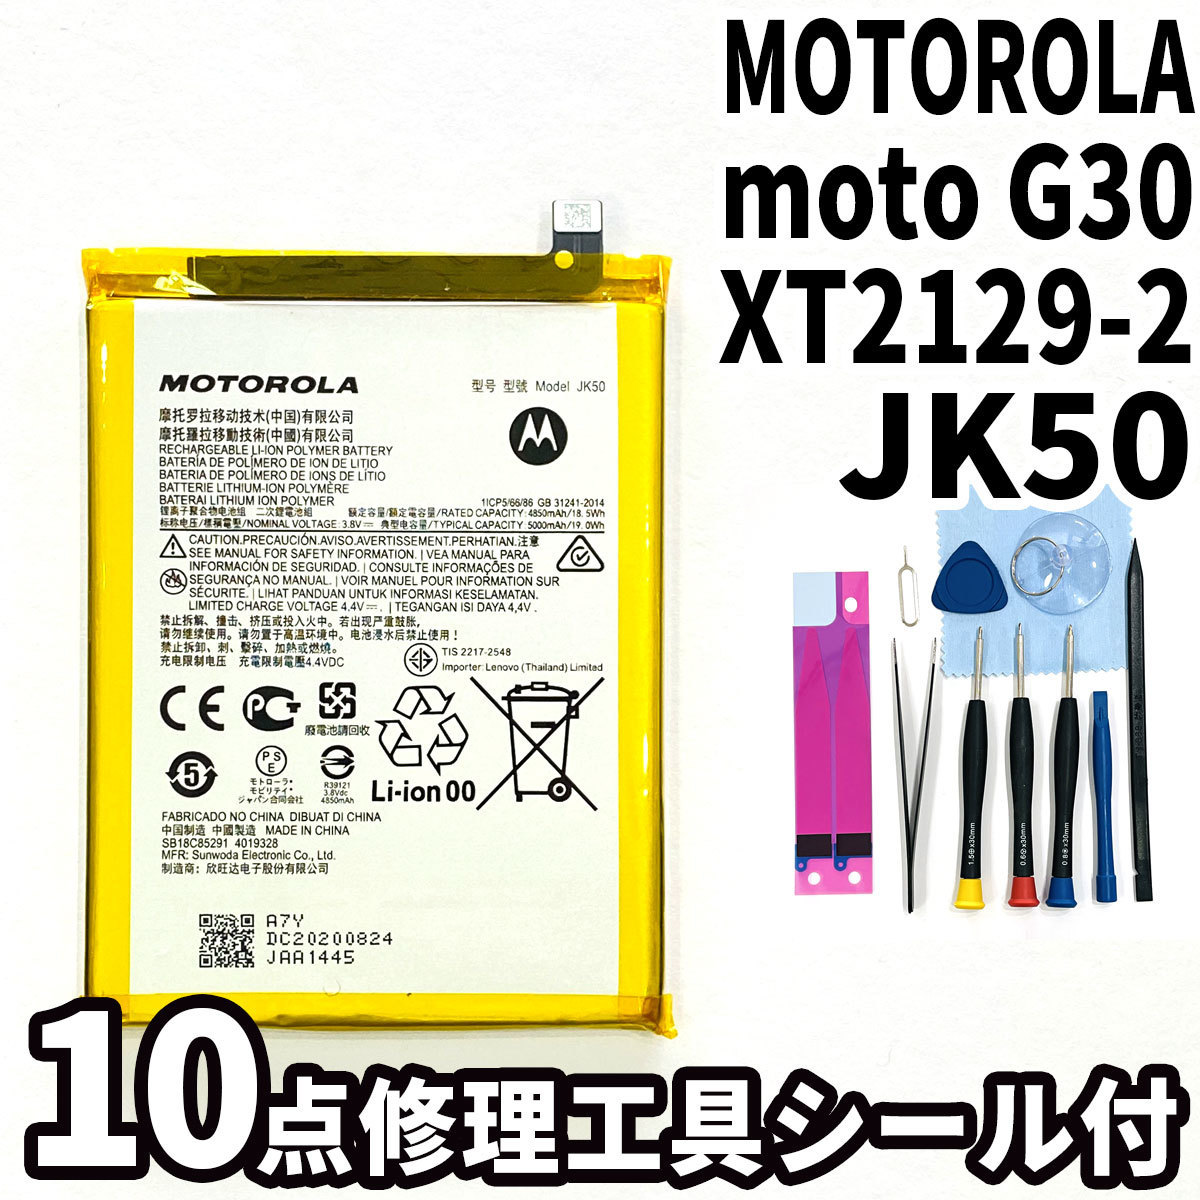 Yahoo!オークション - 純正品新品!即日発送!MOTOROLA moto G30